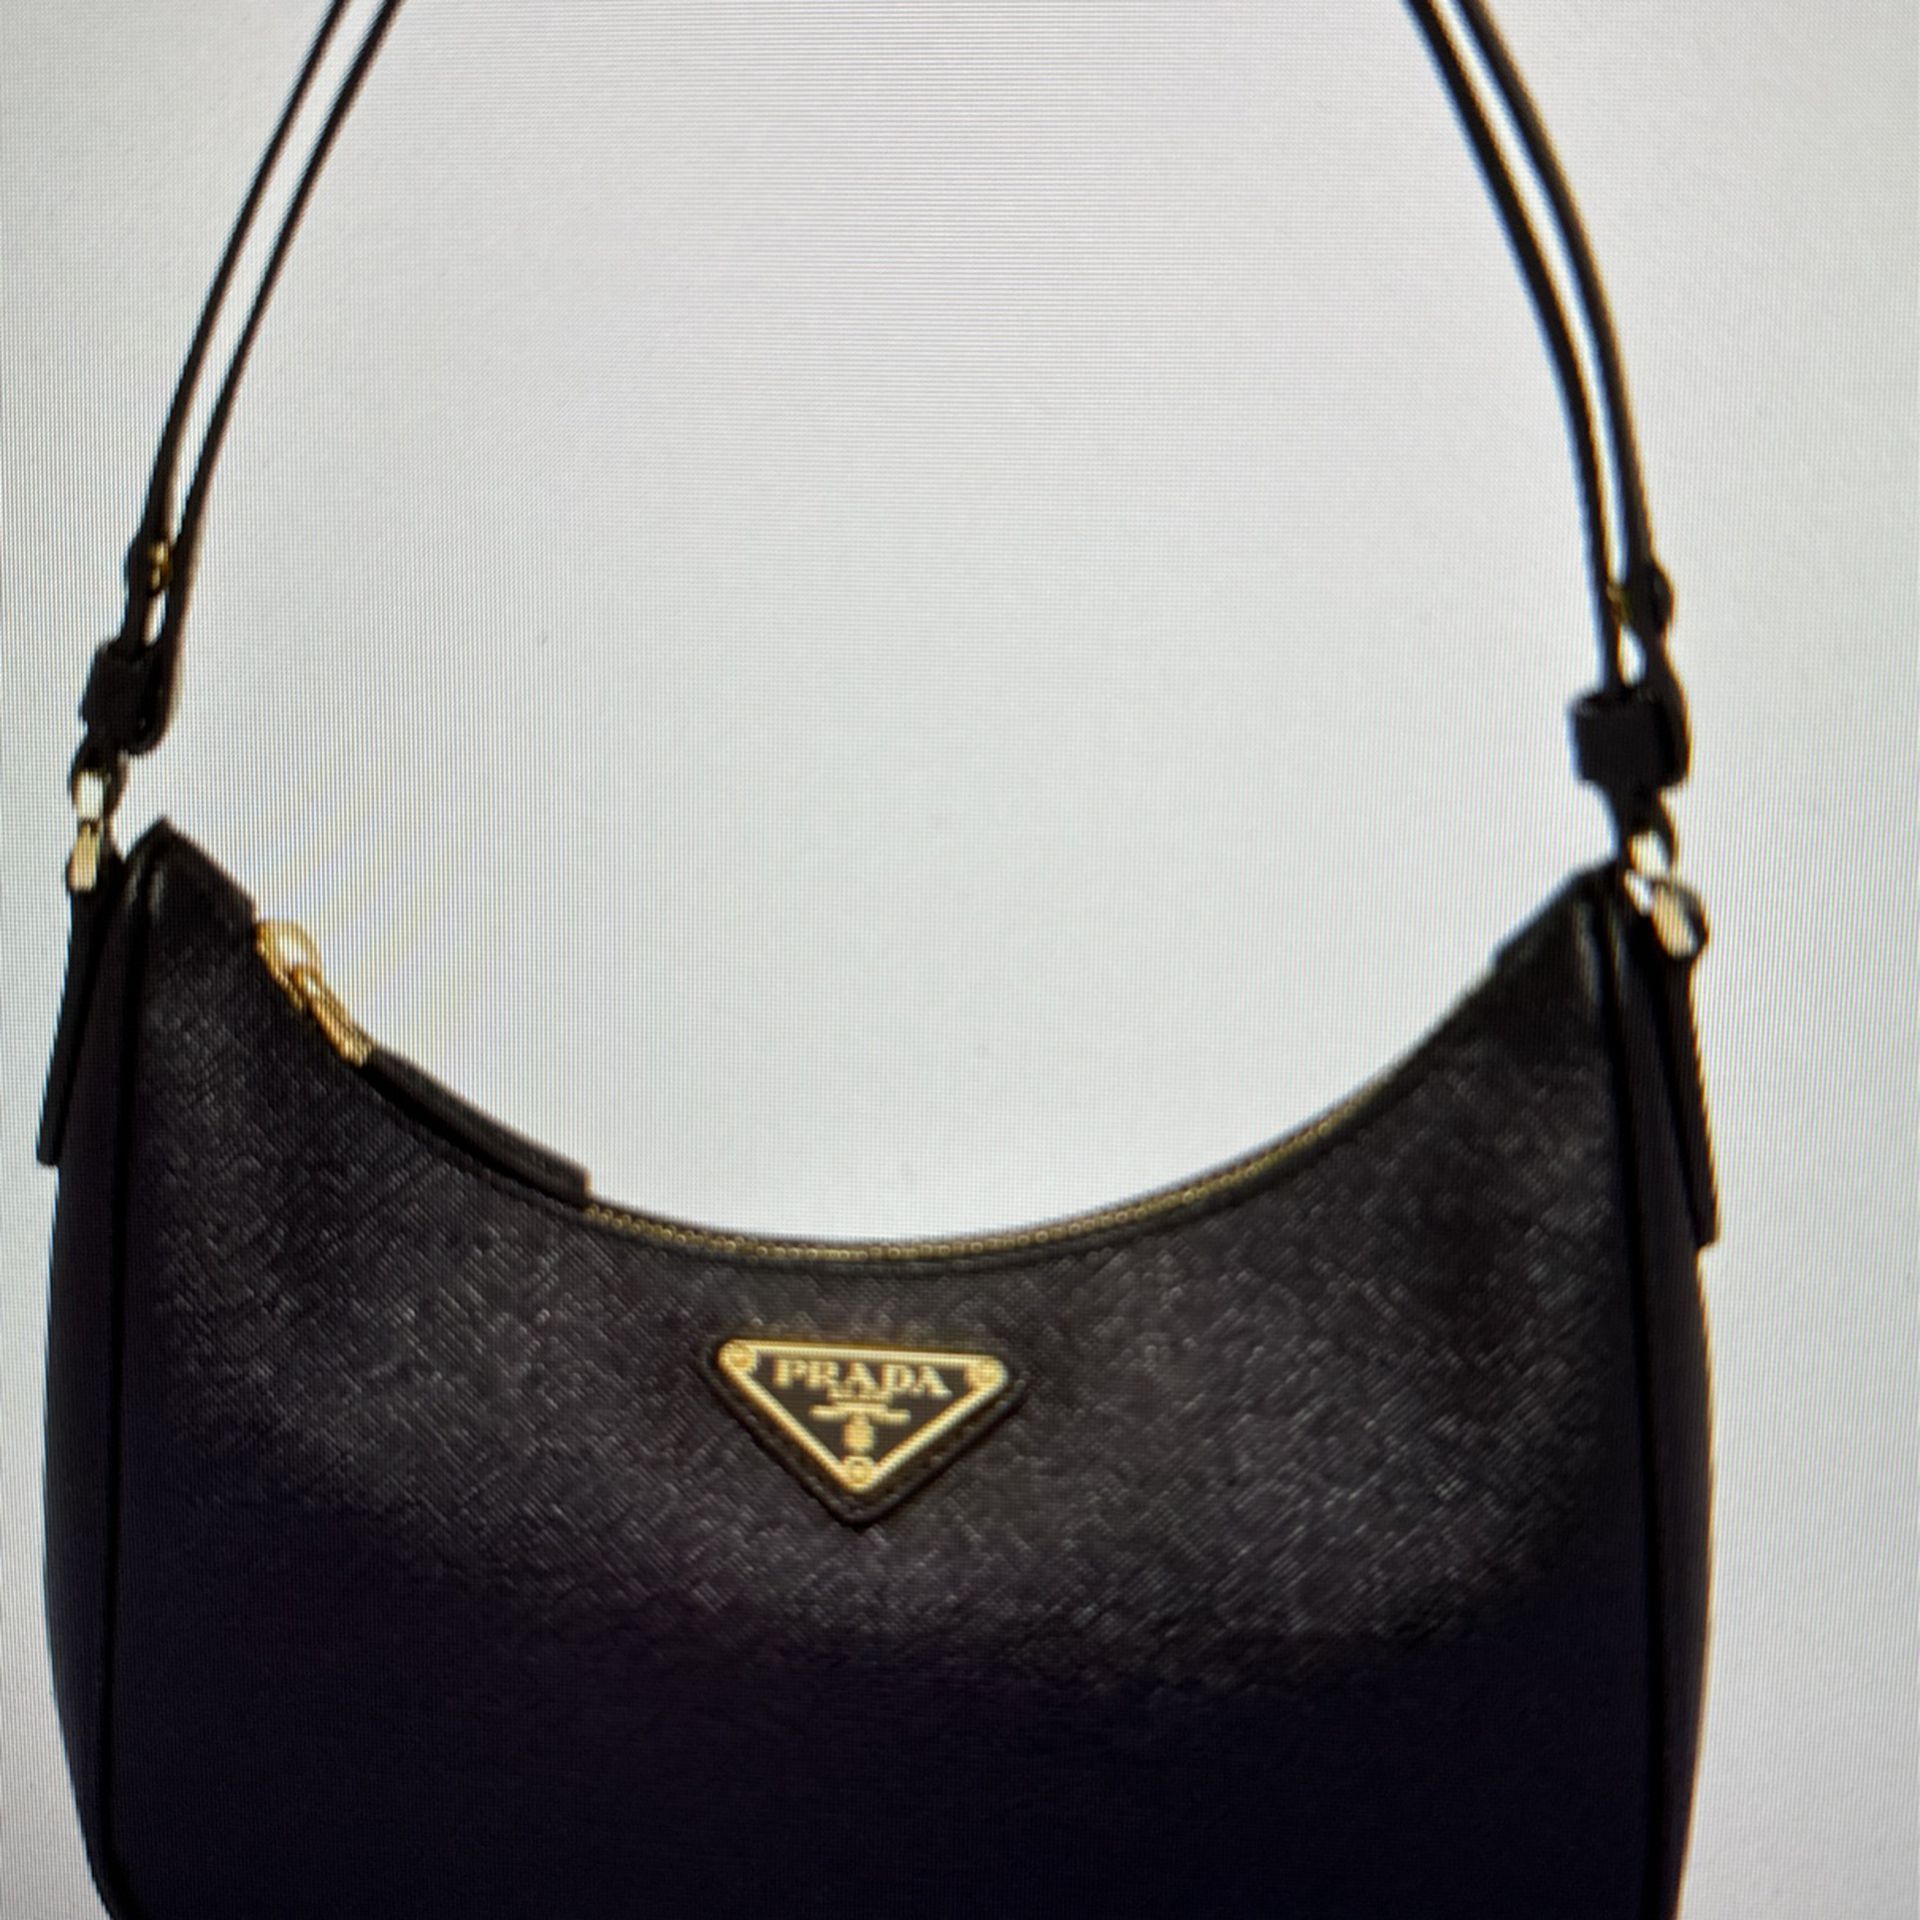 New Authentic Prada Re-Edition Saffiano Leather Mini Bag